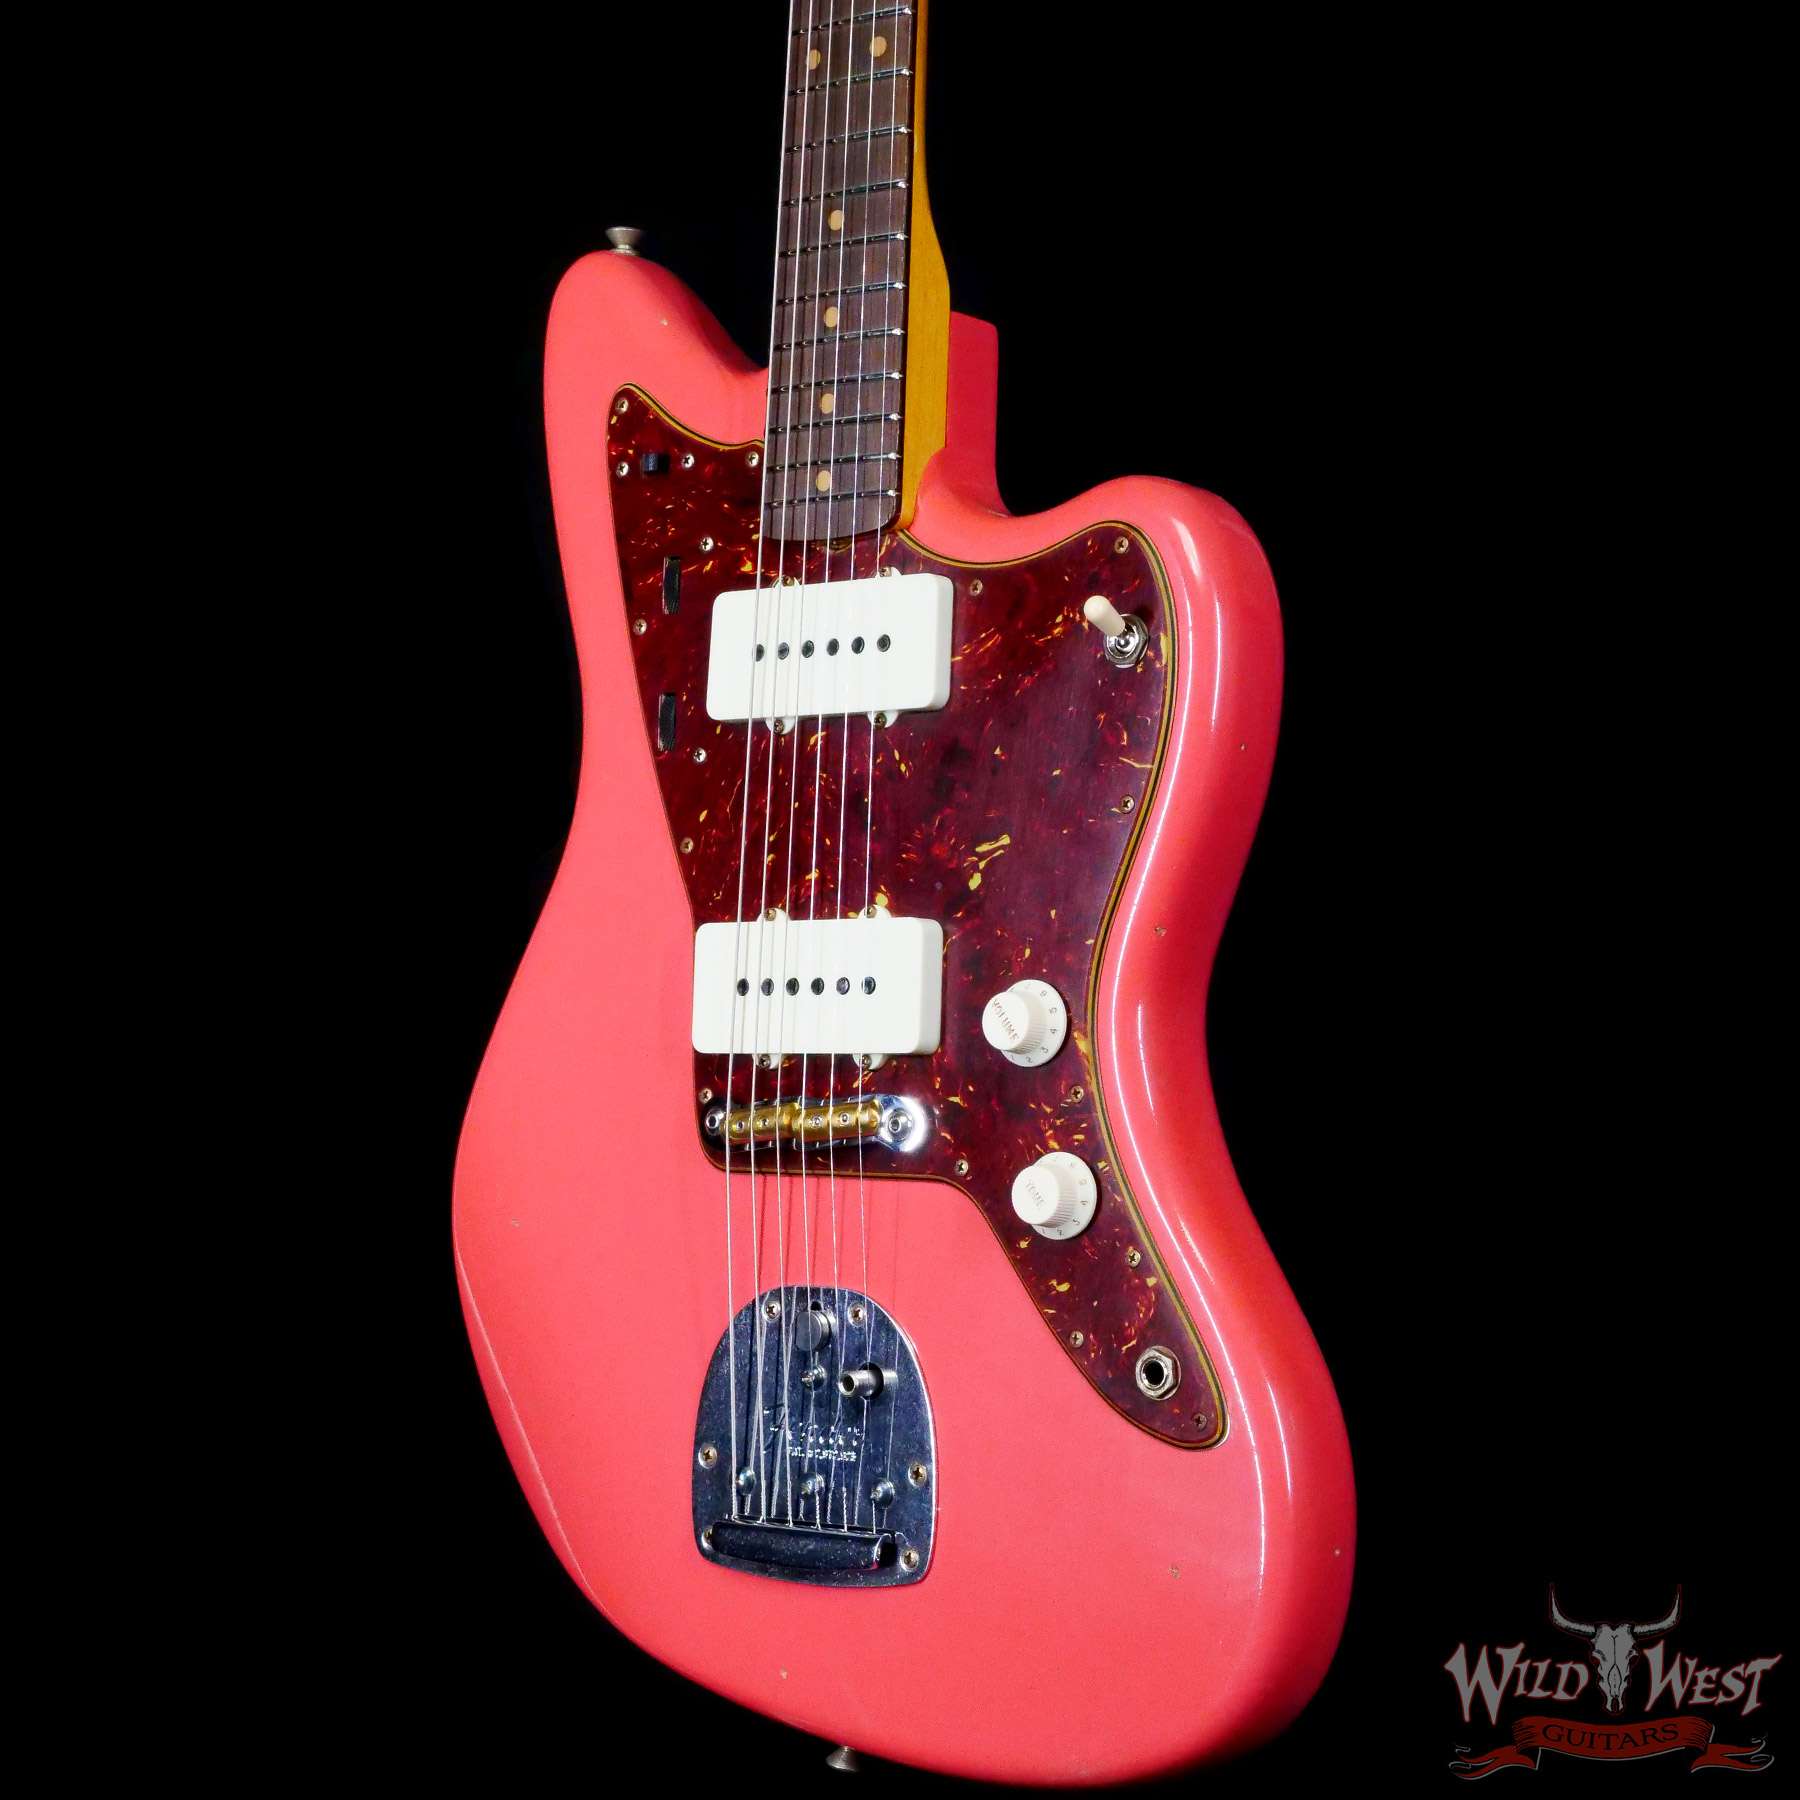 Fender Deluxe Hardshell Case Tolex Brown Tolex, Jaguar/Jazzmaster